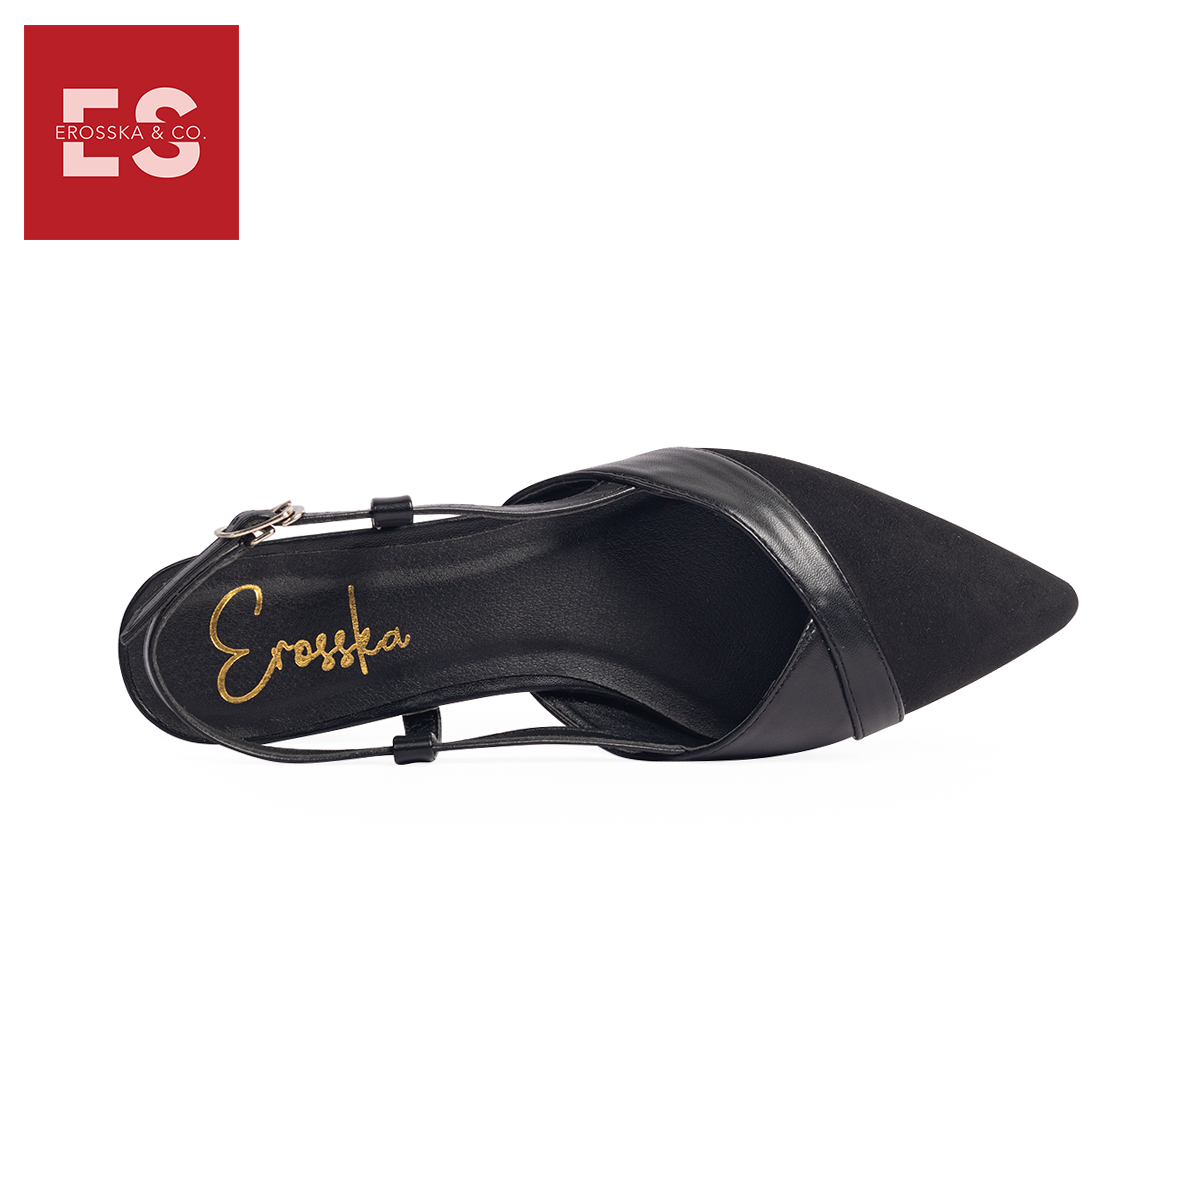 Giày Sandal Nữ Đế Bệt Mũi Nhọn Thời Trang Erosska EL005 ( Màu Đen)